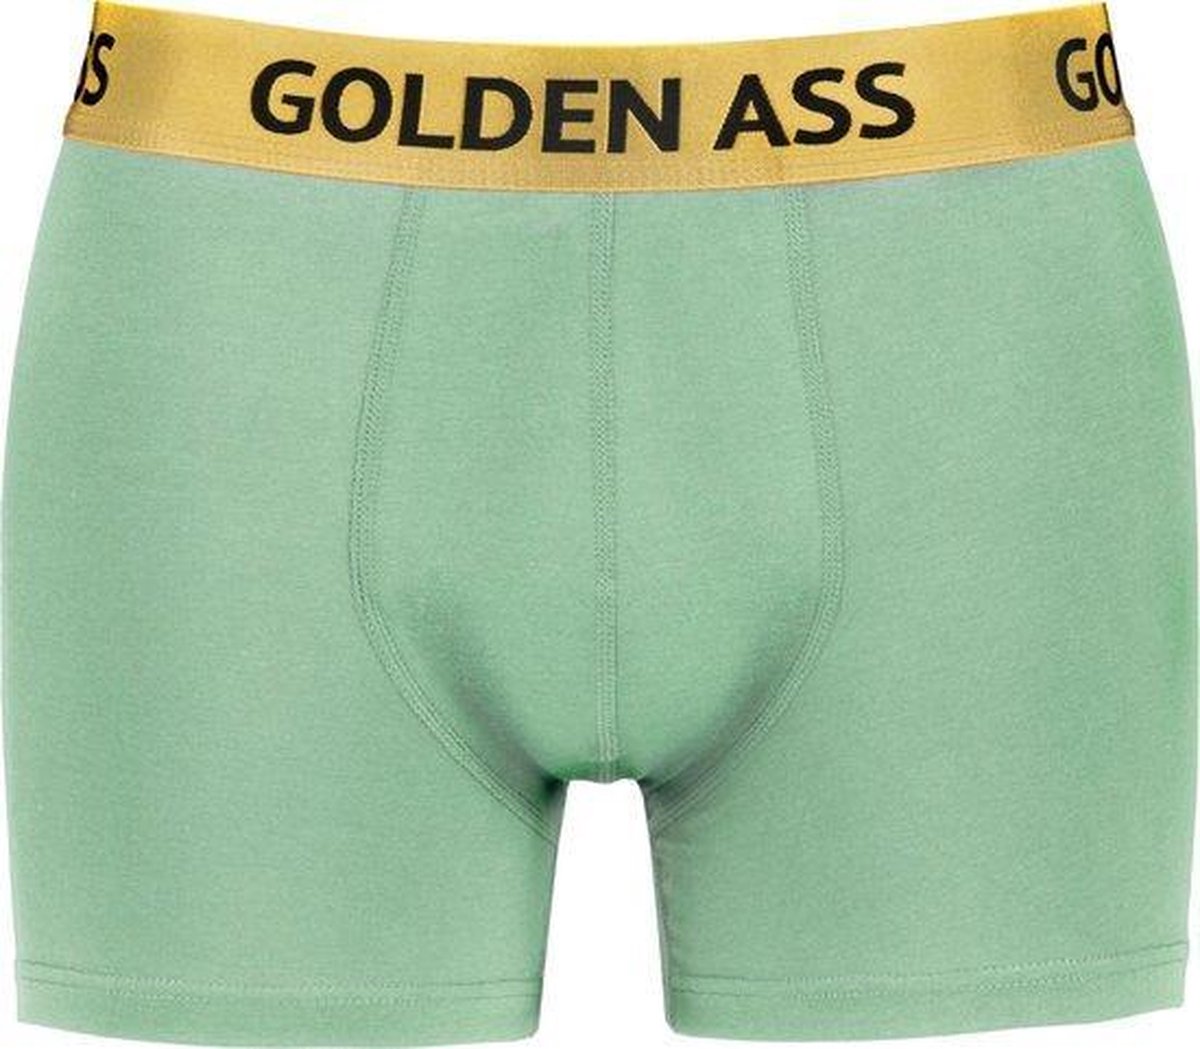 Golden Ass - Heren boxershort mint groen M